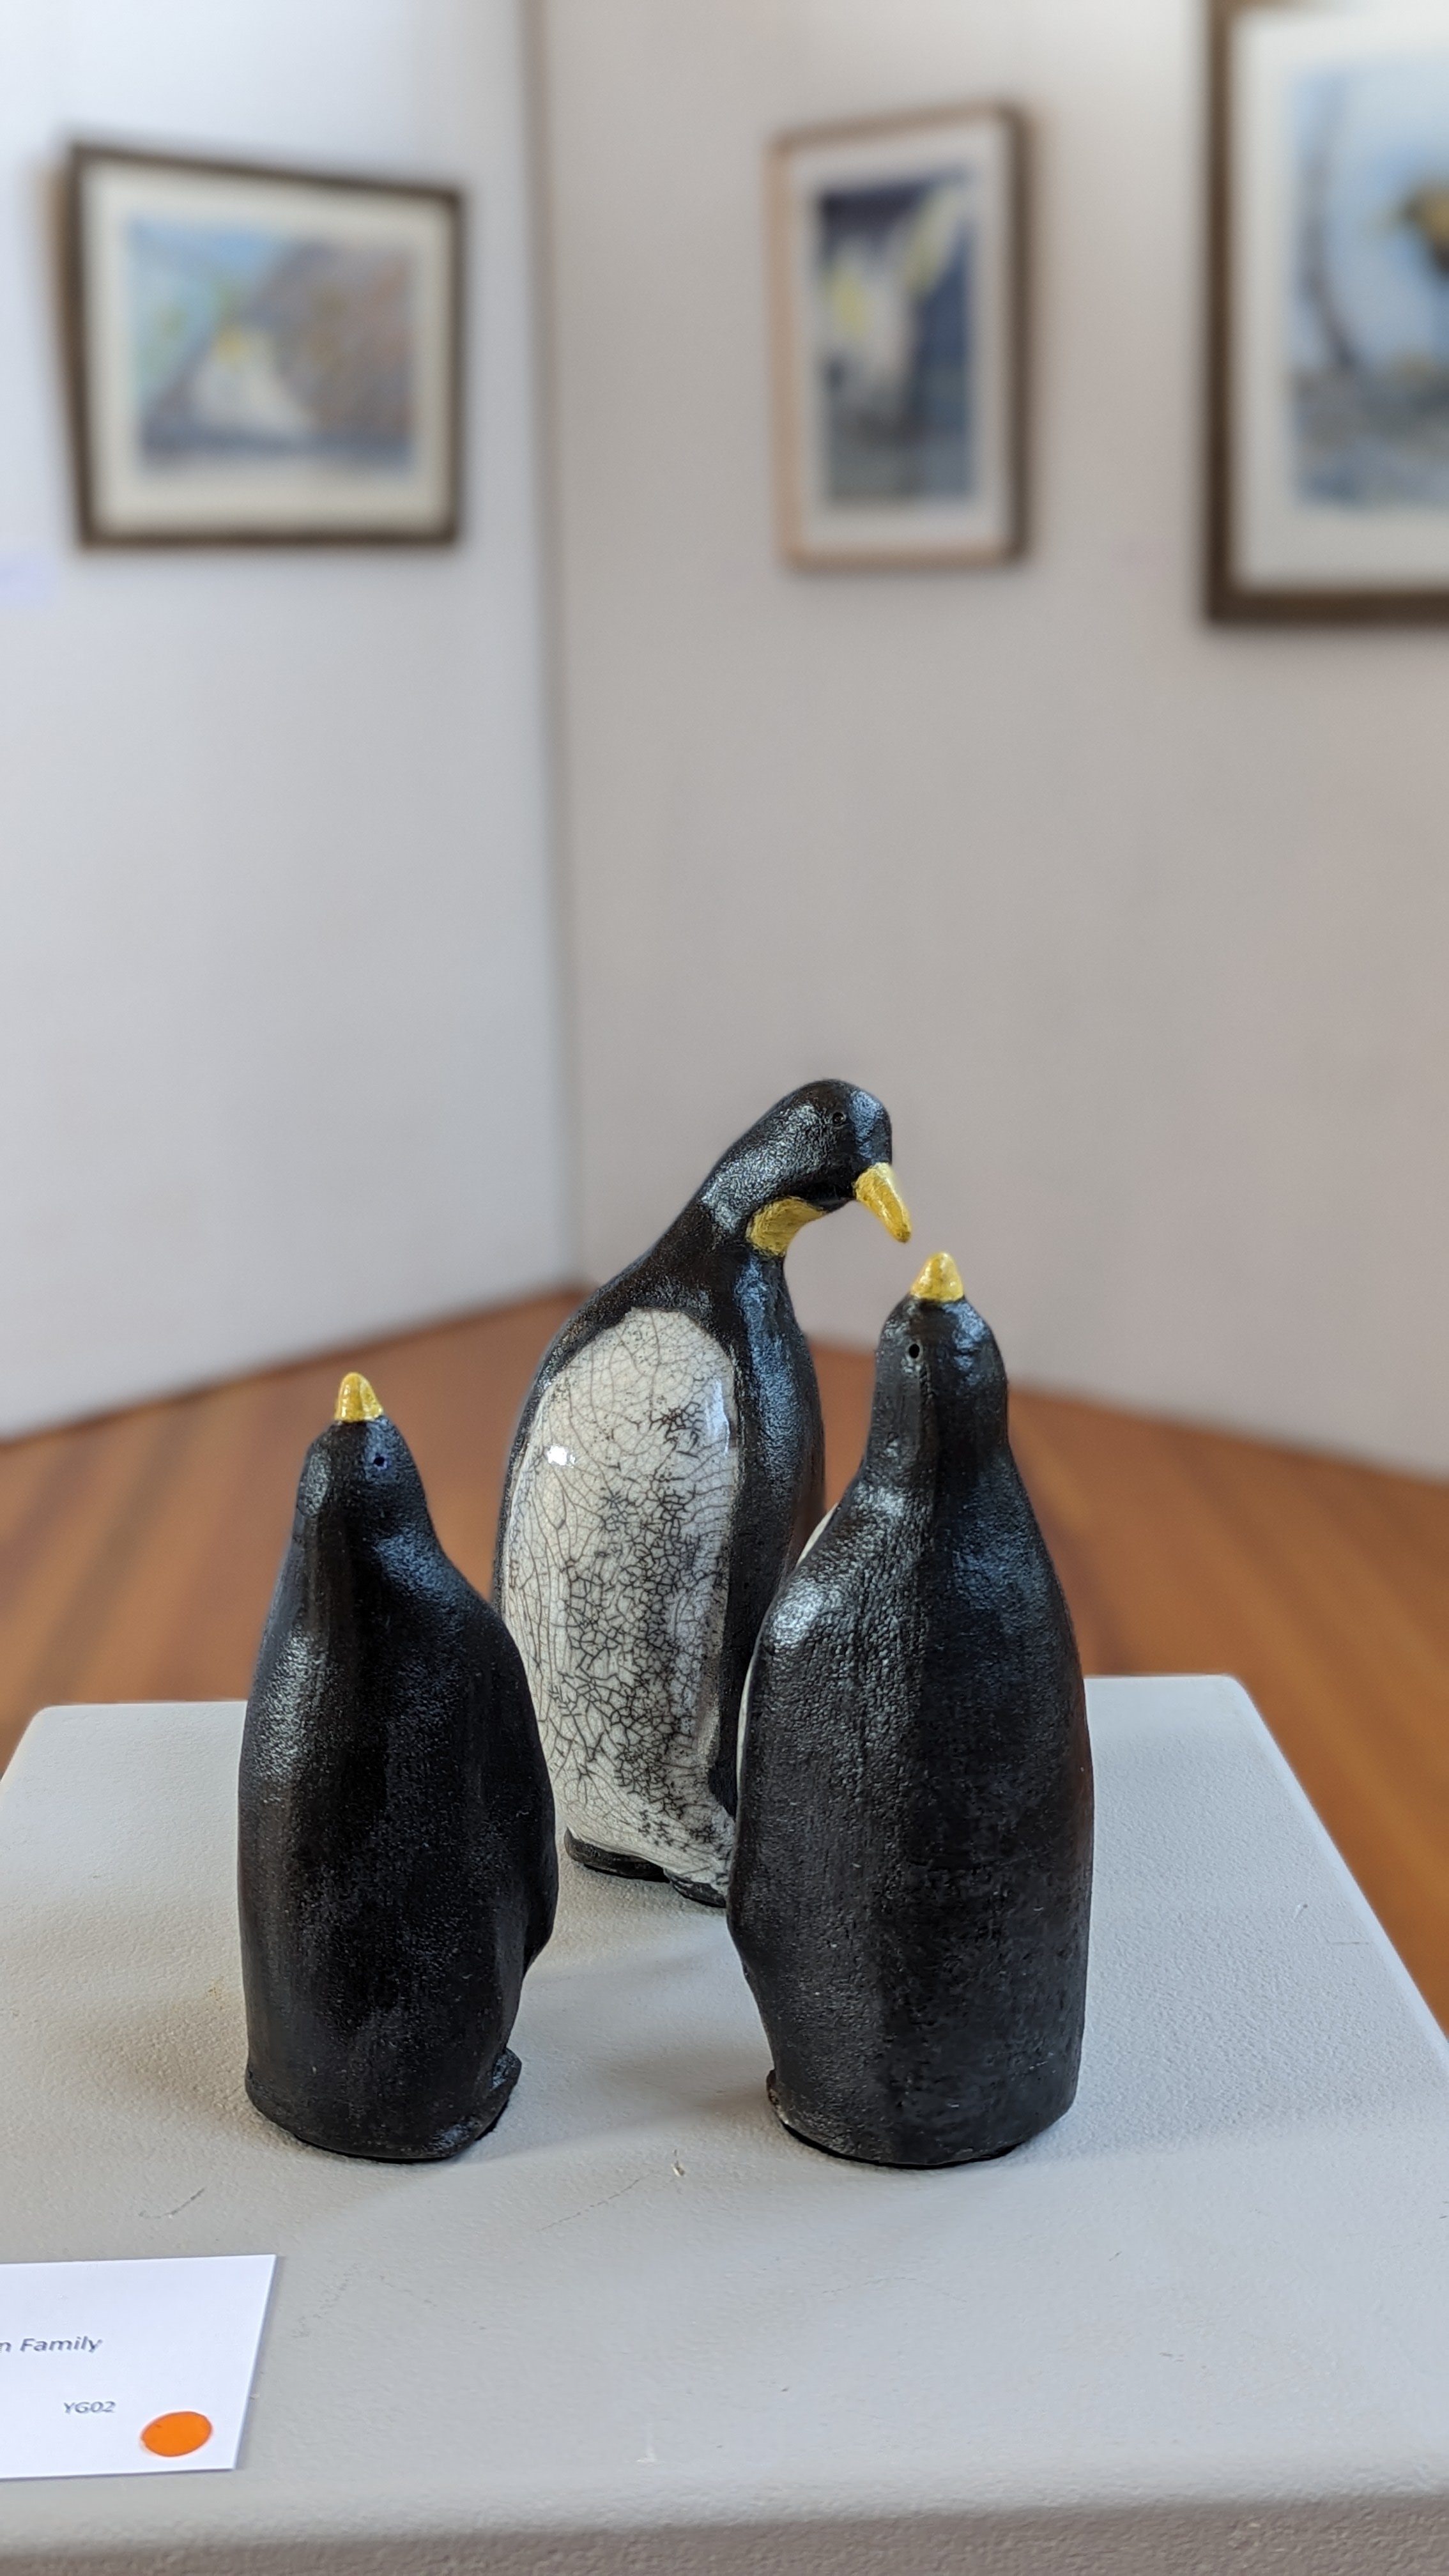 Raku - Penguin Family by Yve Gray.jpg